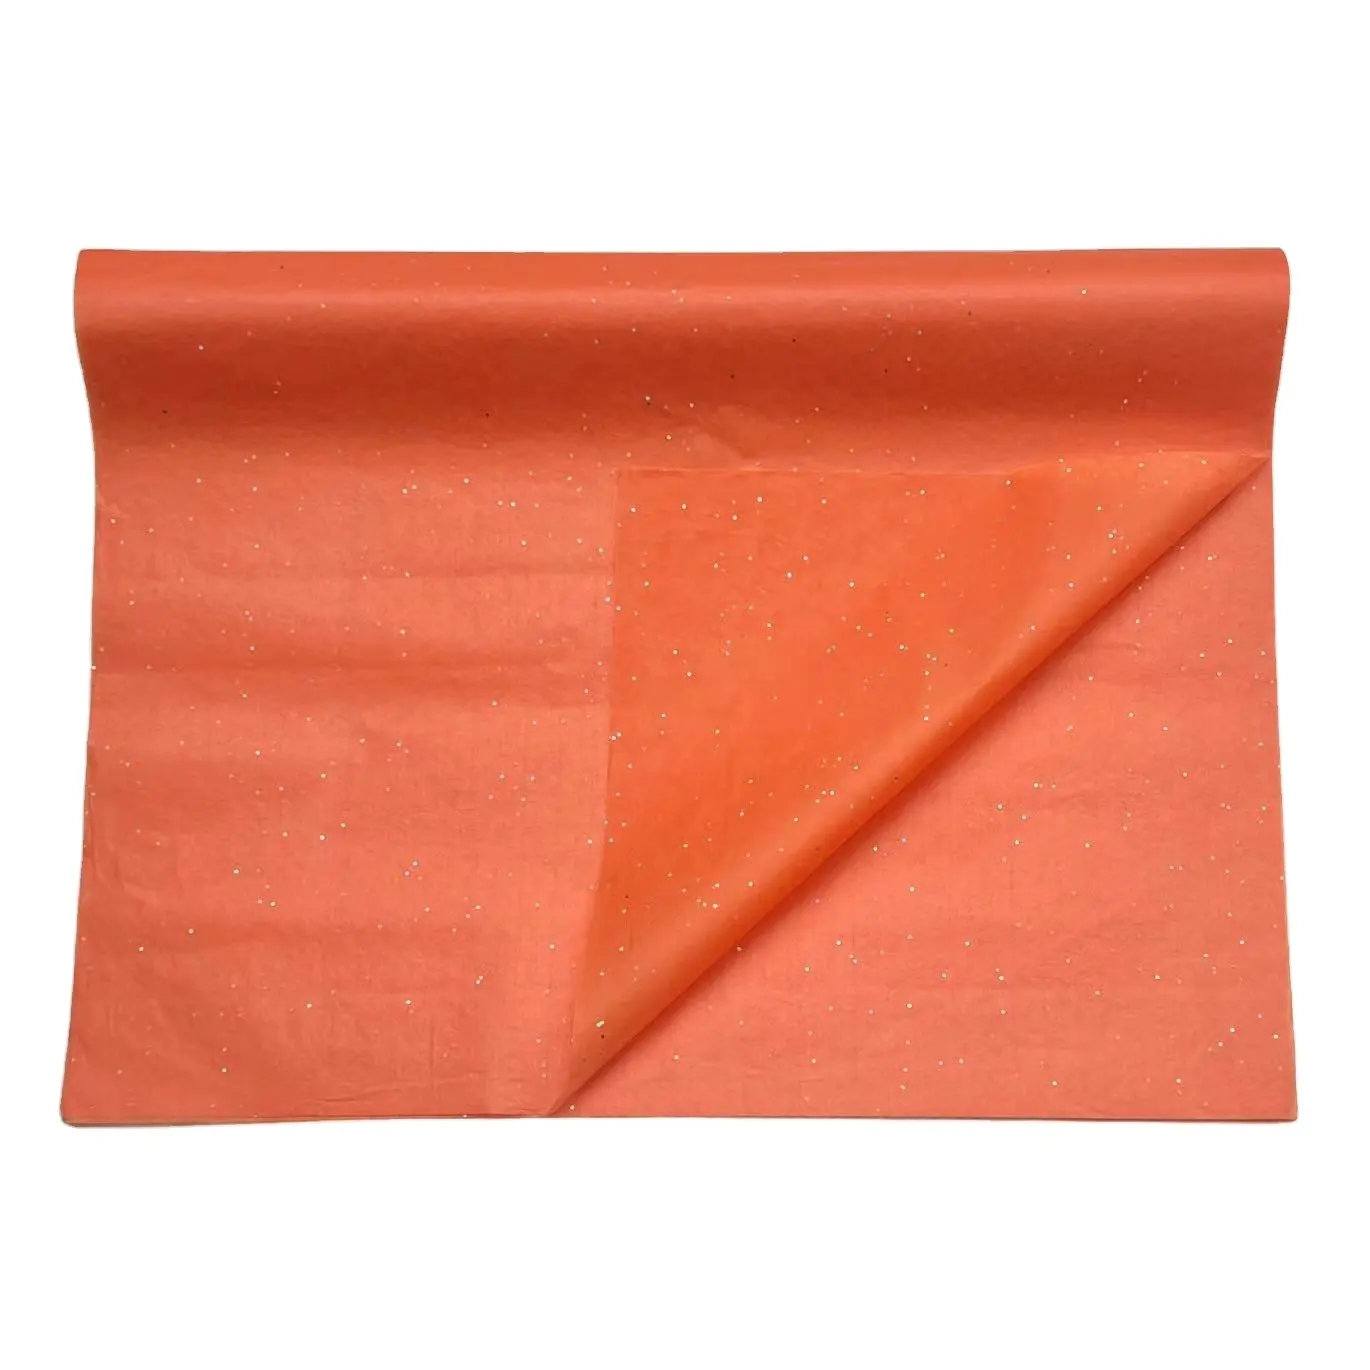 17g/m² orange Silber Edelsteine farbiges Papier für die Dekoration Verpackung Verpackung hochwertiges recyceltes farbiges Seidenpapier